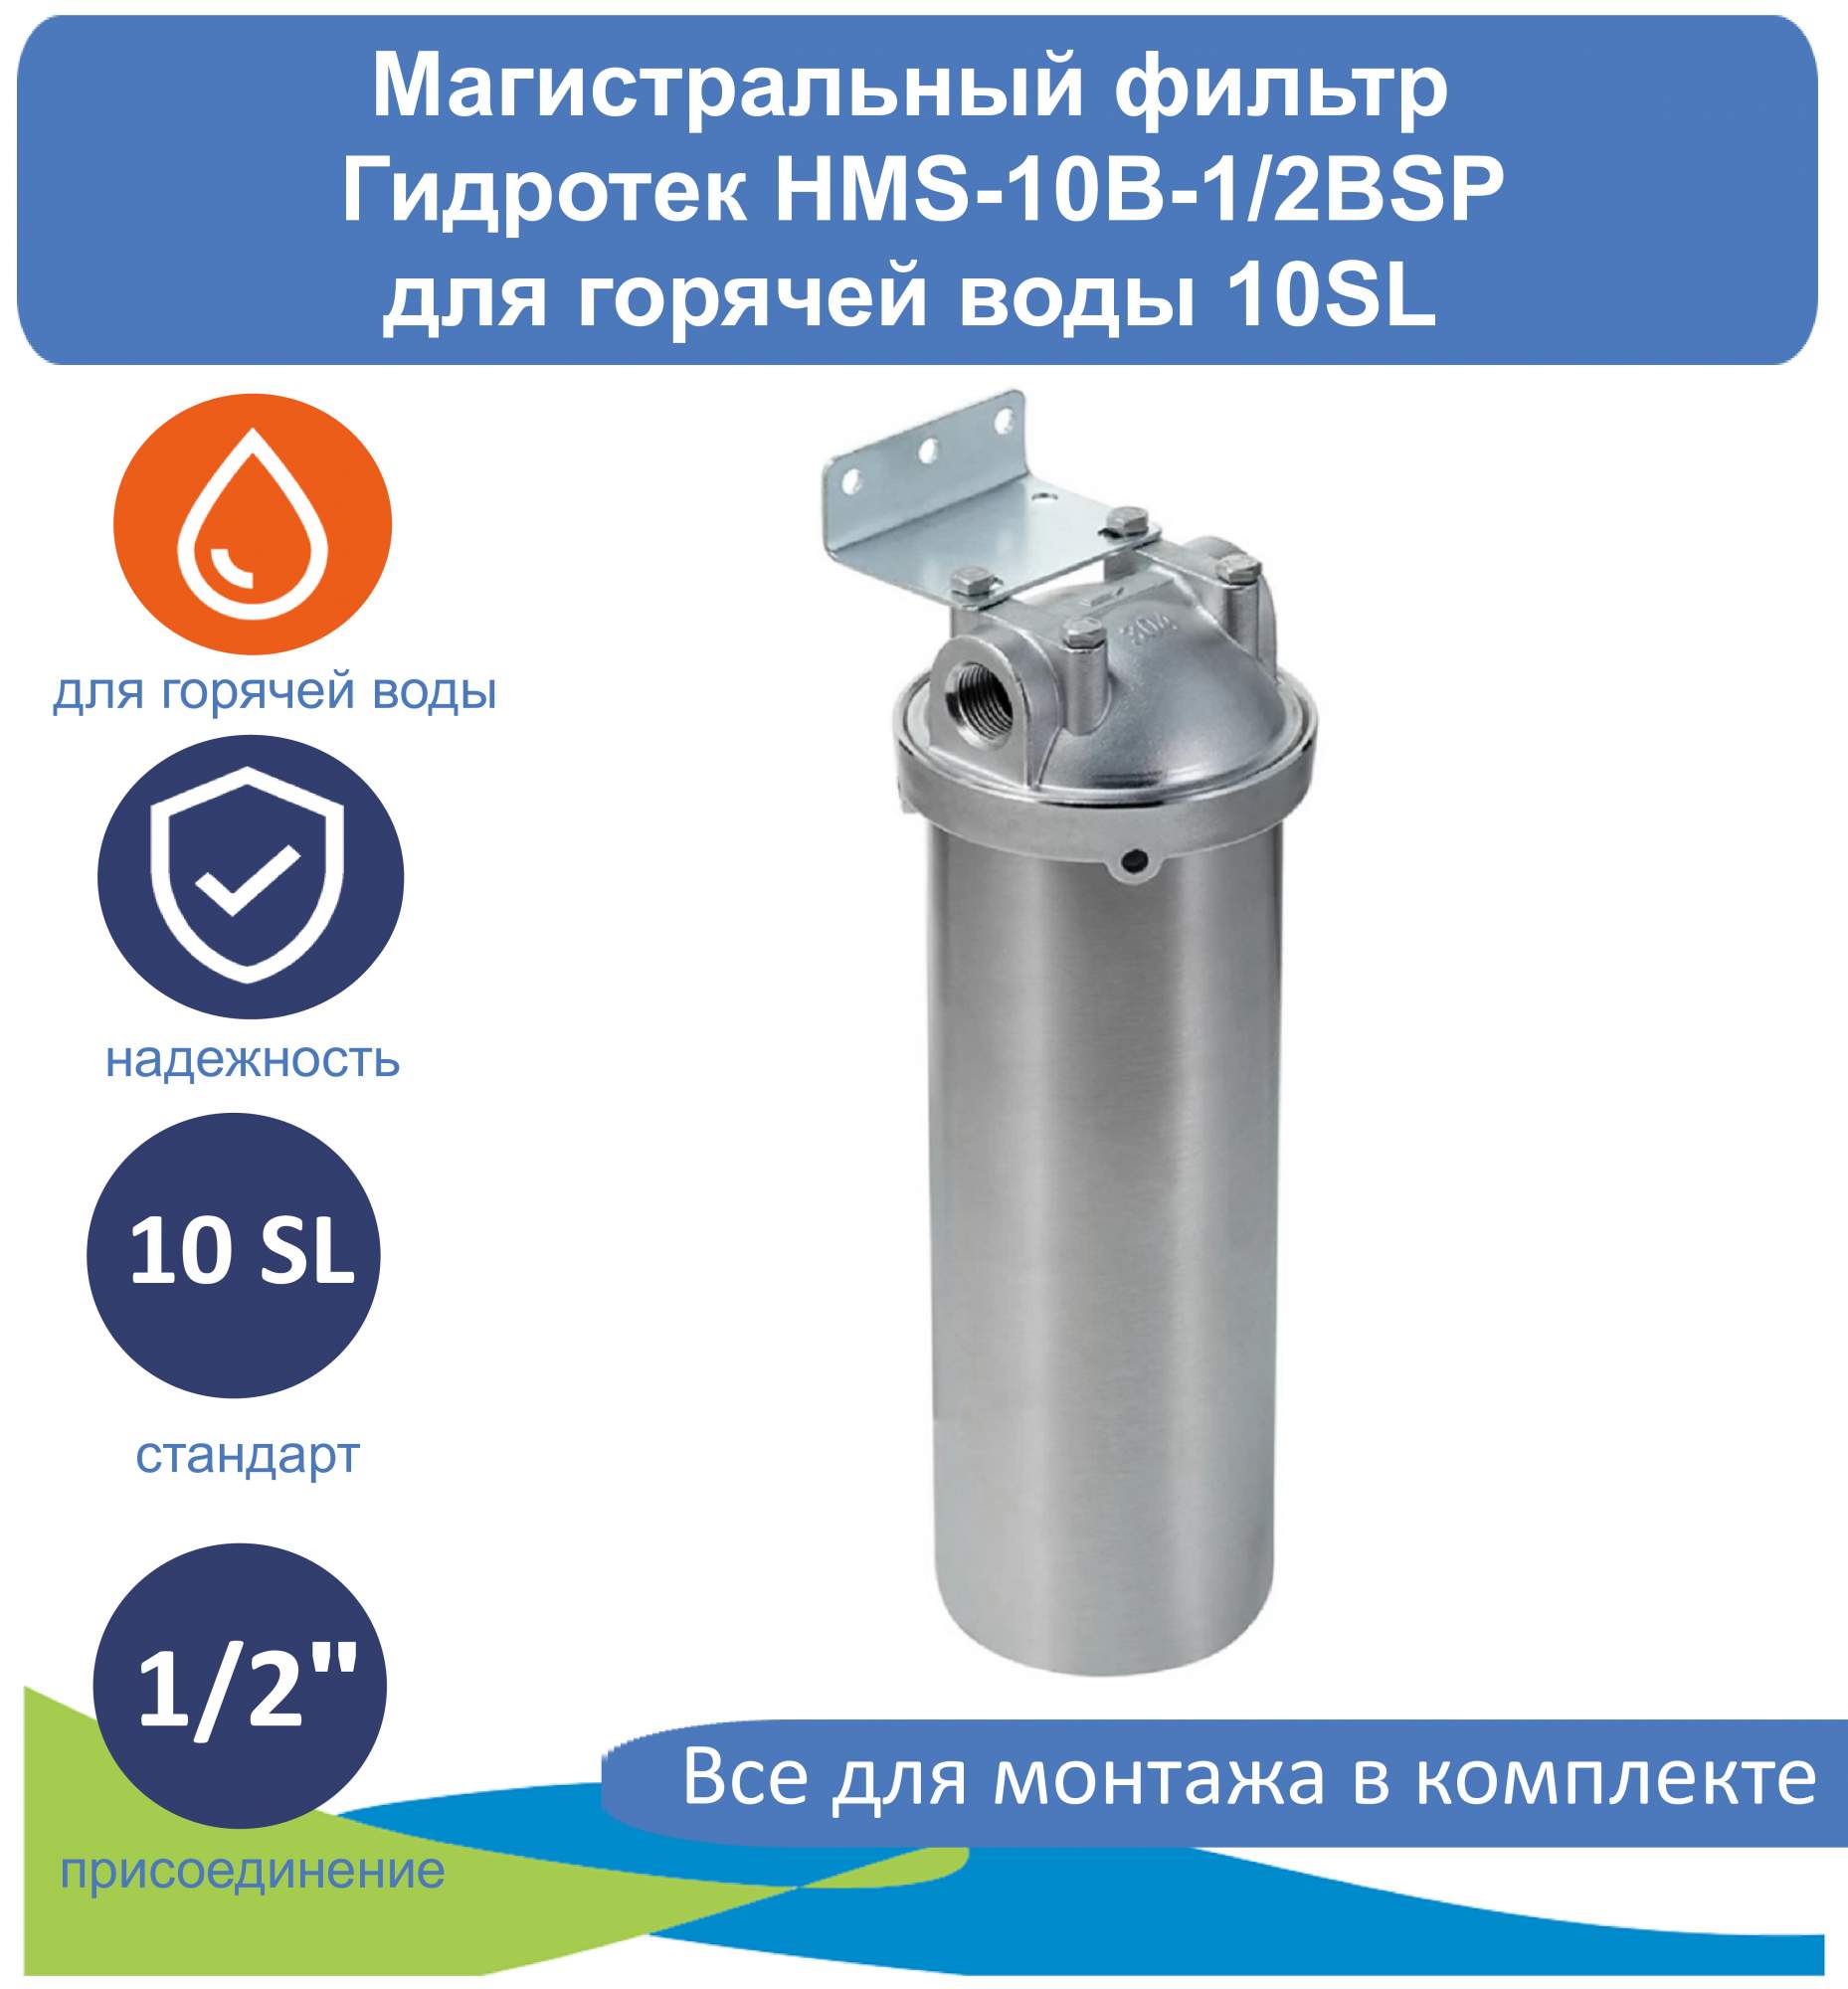 фото Магистральный фильтр (корпус) для горячей воды 10sl гидротек hms-10b-1/2bsp гидротекс